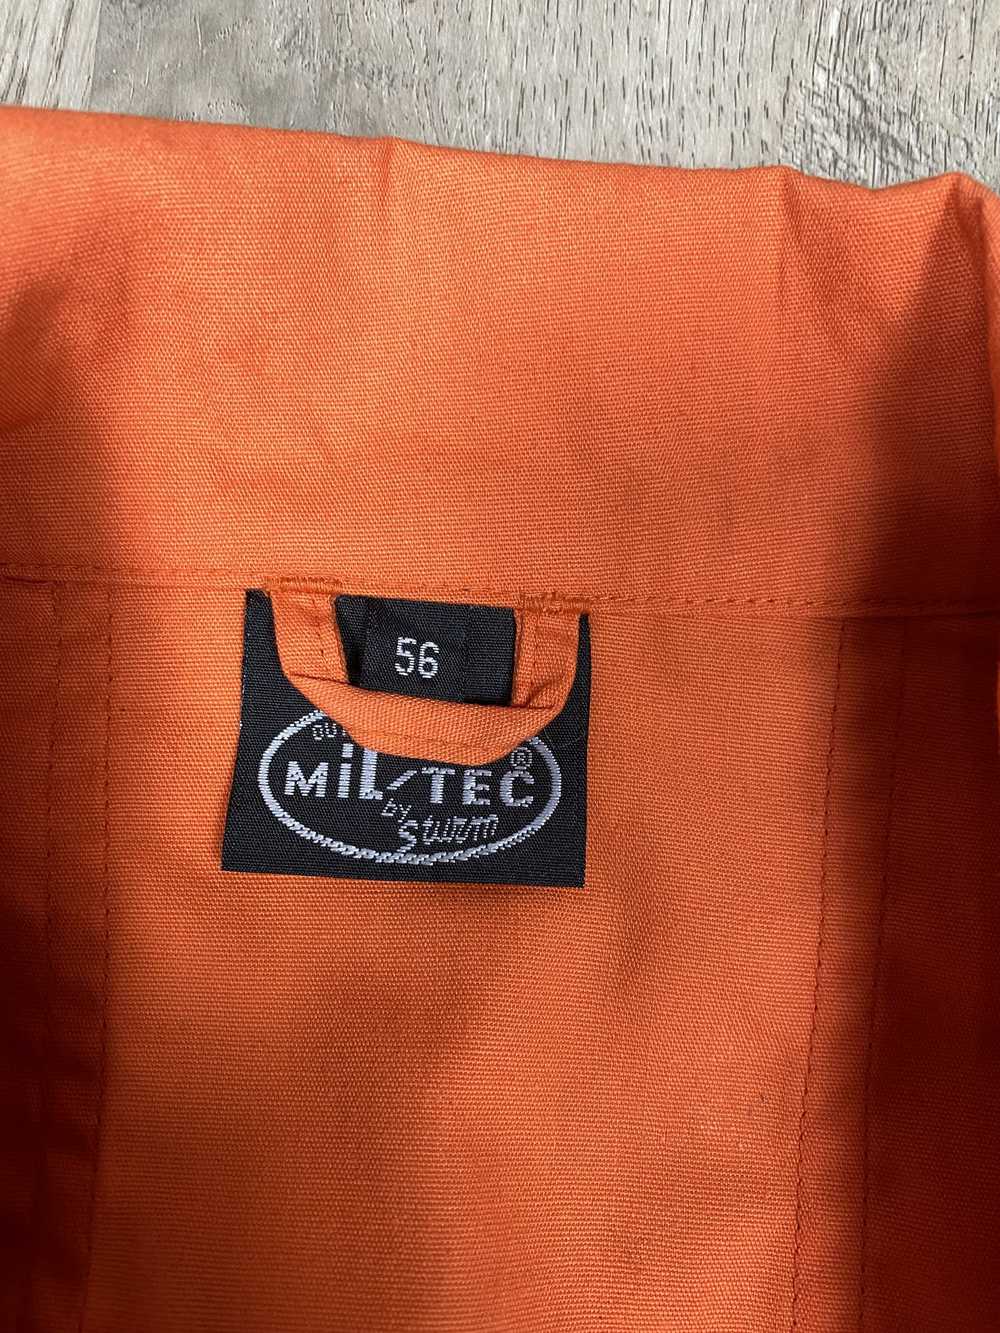 Mil Tec × Military × Vintage Mil Tec Vintage Flig… - image 7